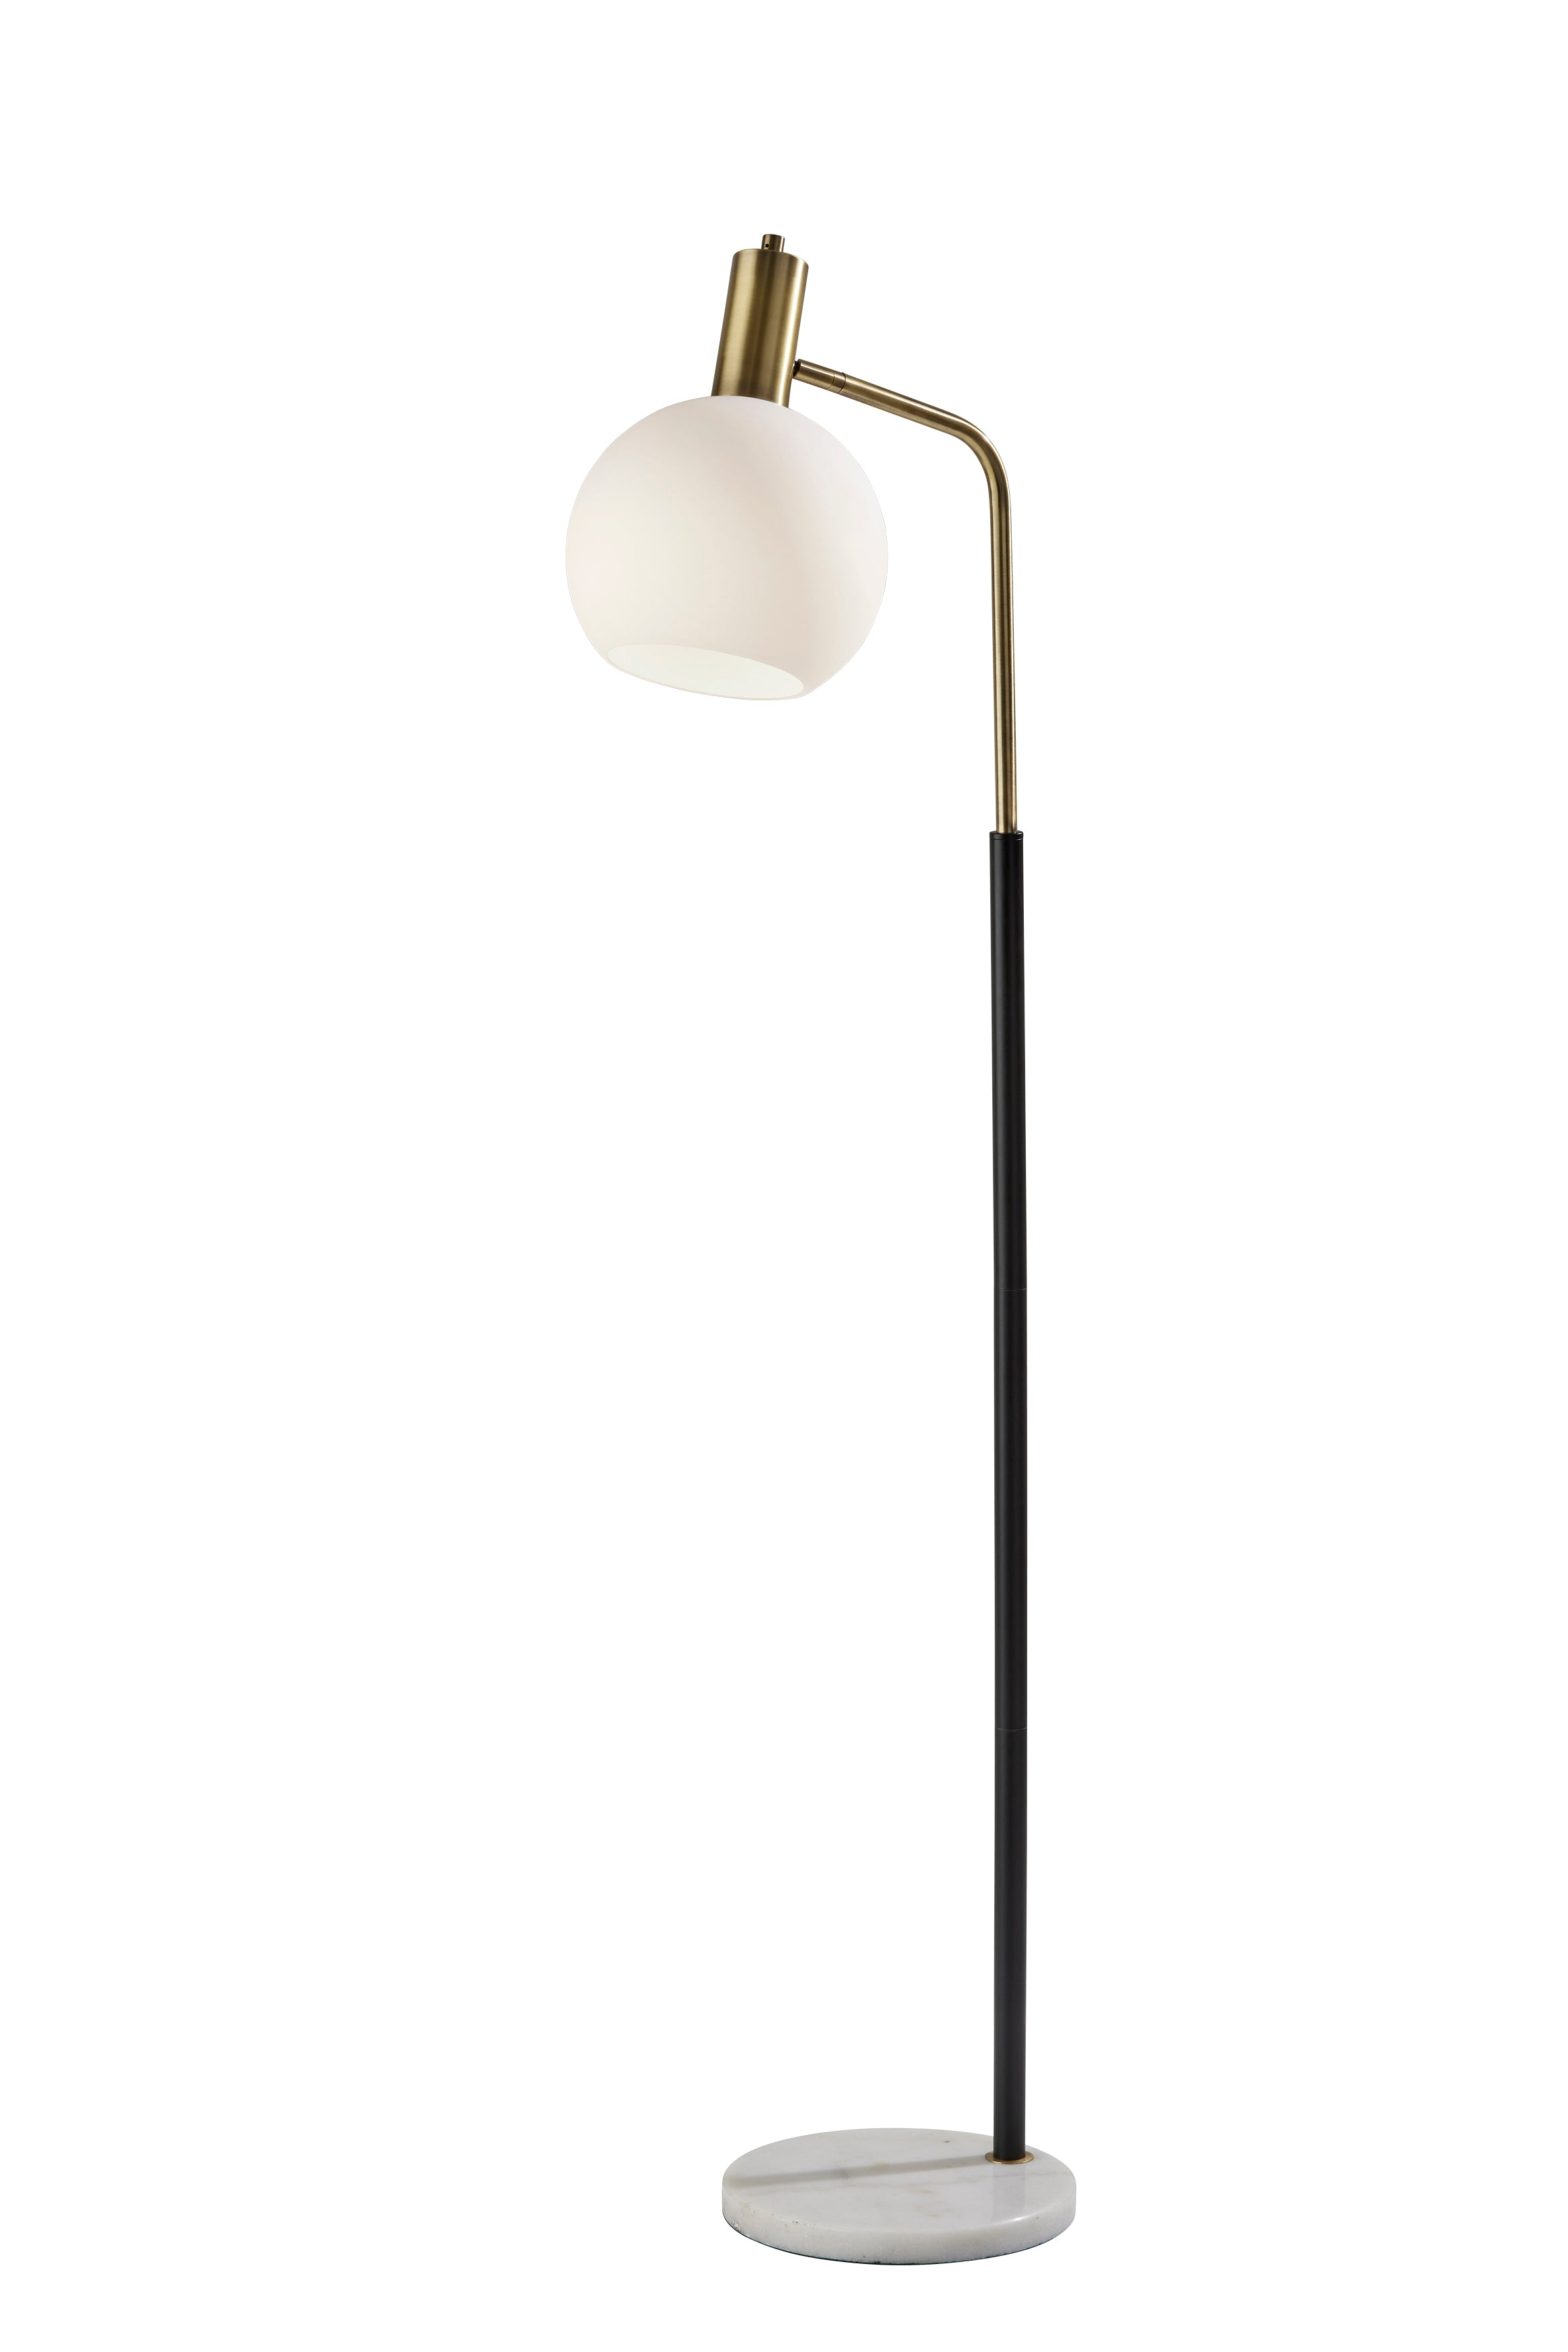 CORBIN Lampe sur pied Noir, Or - 3579-21 | ADESSO